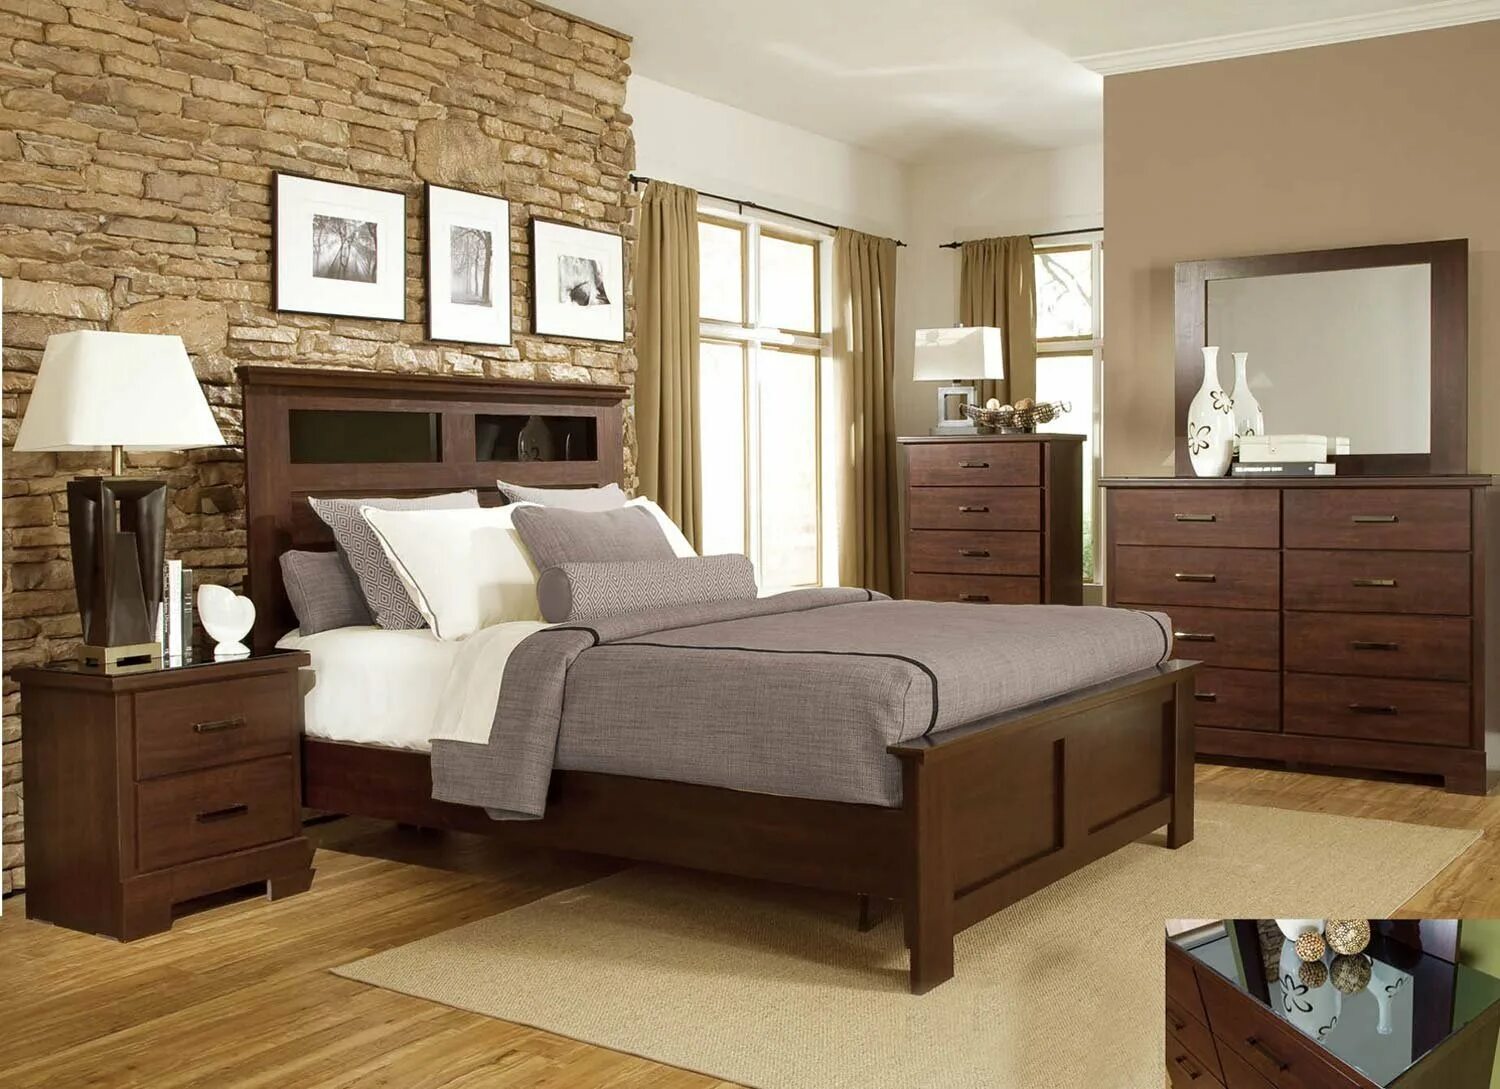 Мебель для спальни. Комната с деревянной мебелью. Спальня с темной мебелью. Спальня из дерева.